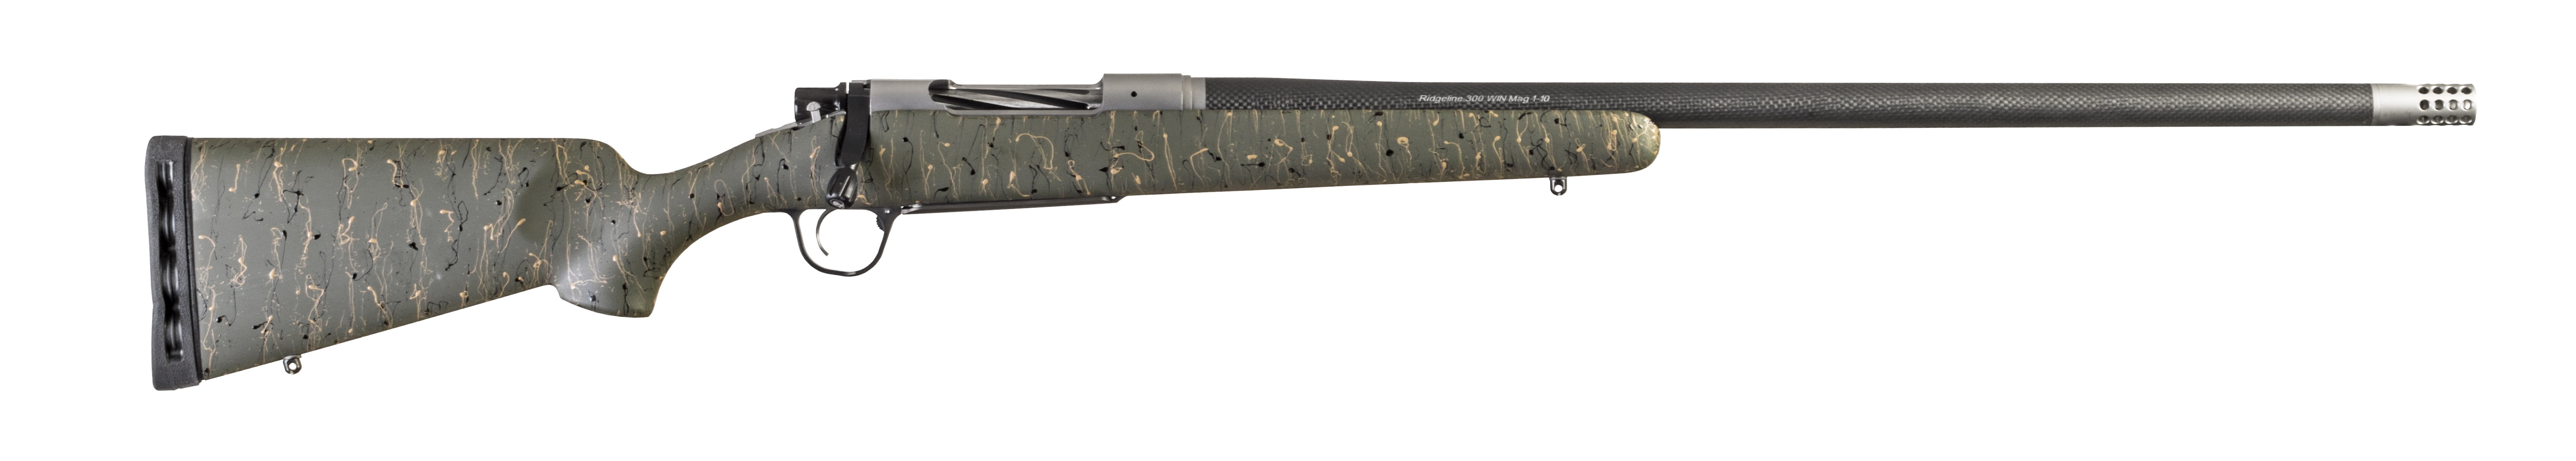 Christensen Arms Ridgeline 22-250